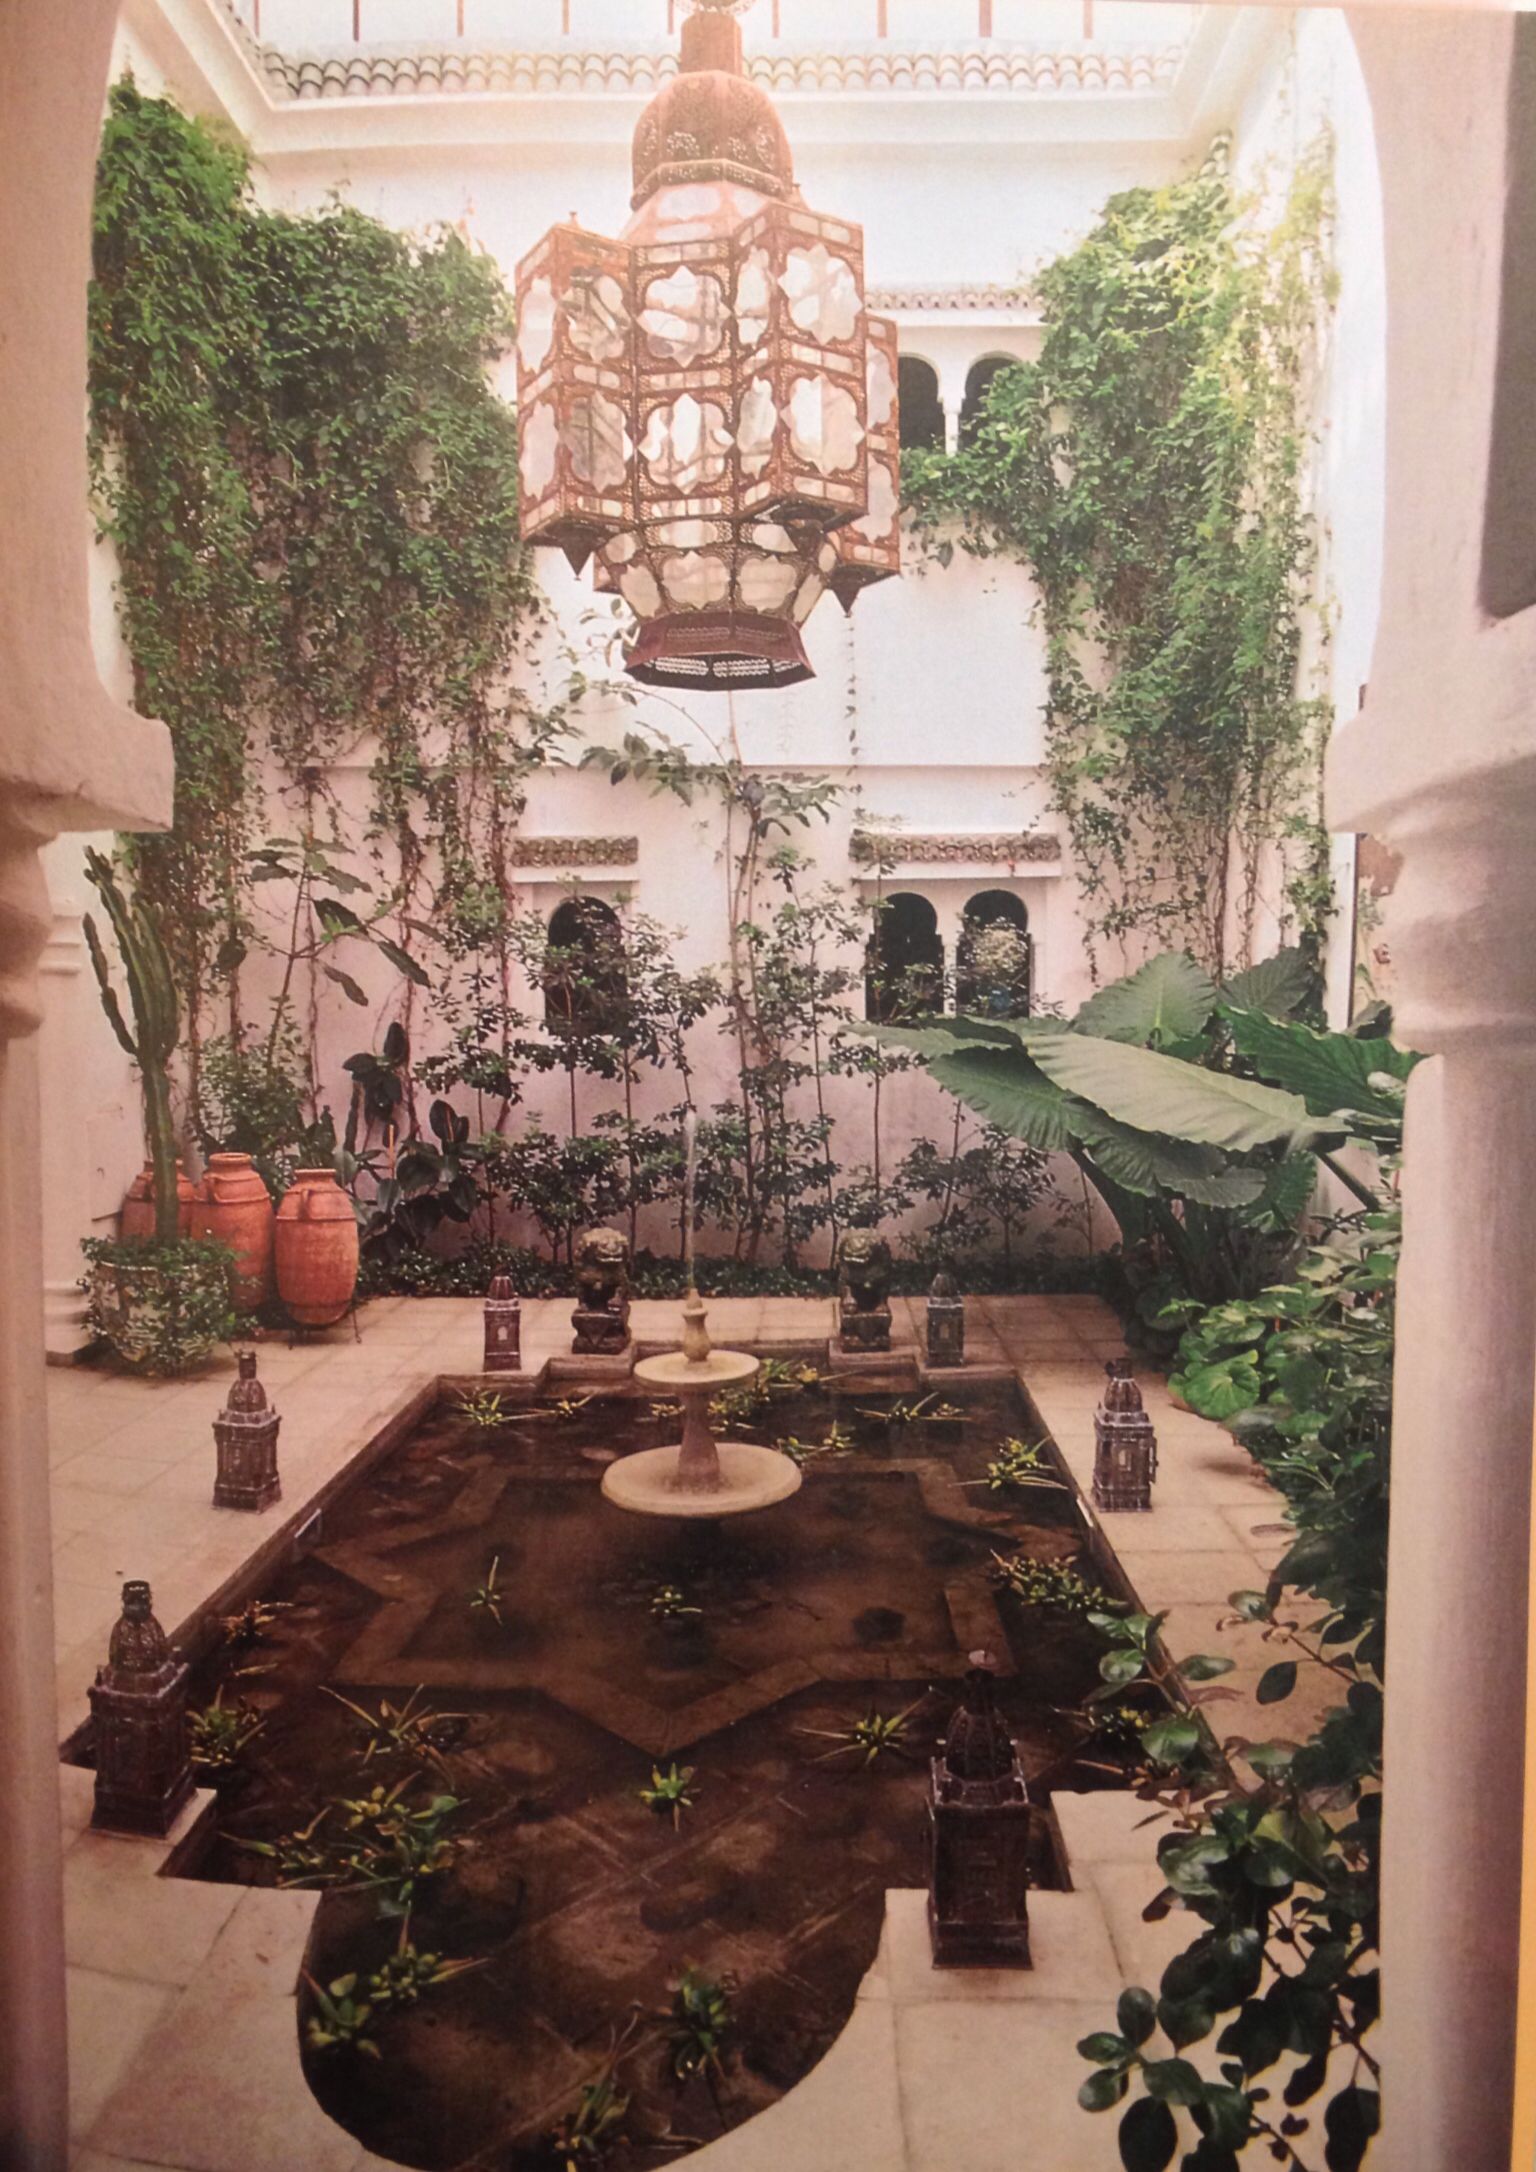 Top Rated Moroccan Garden Ideas Decor Tiled Patio Courtyard